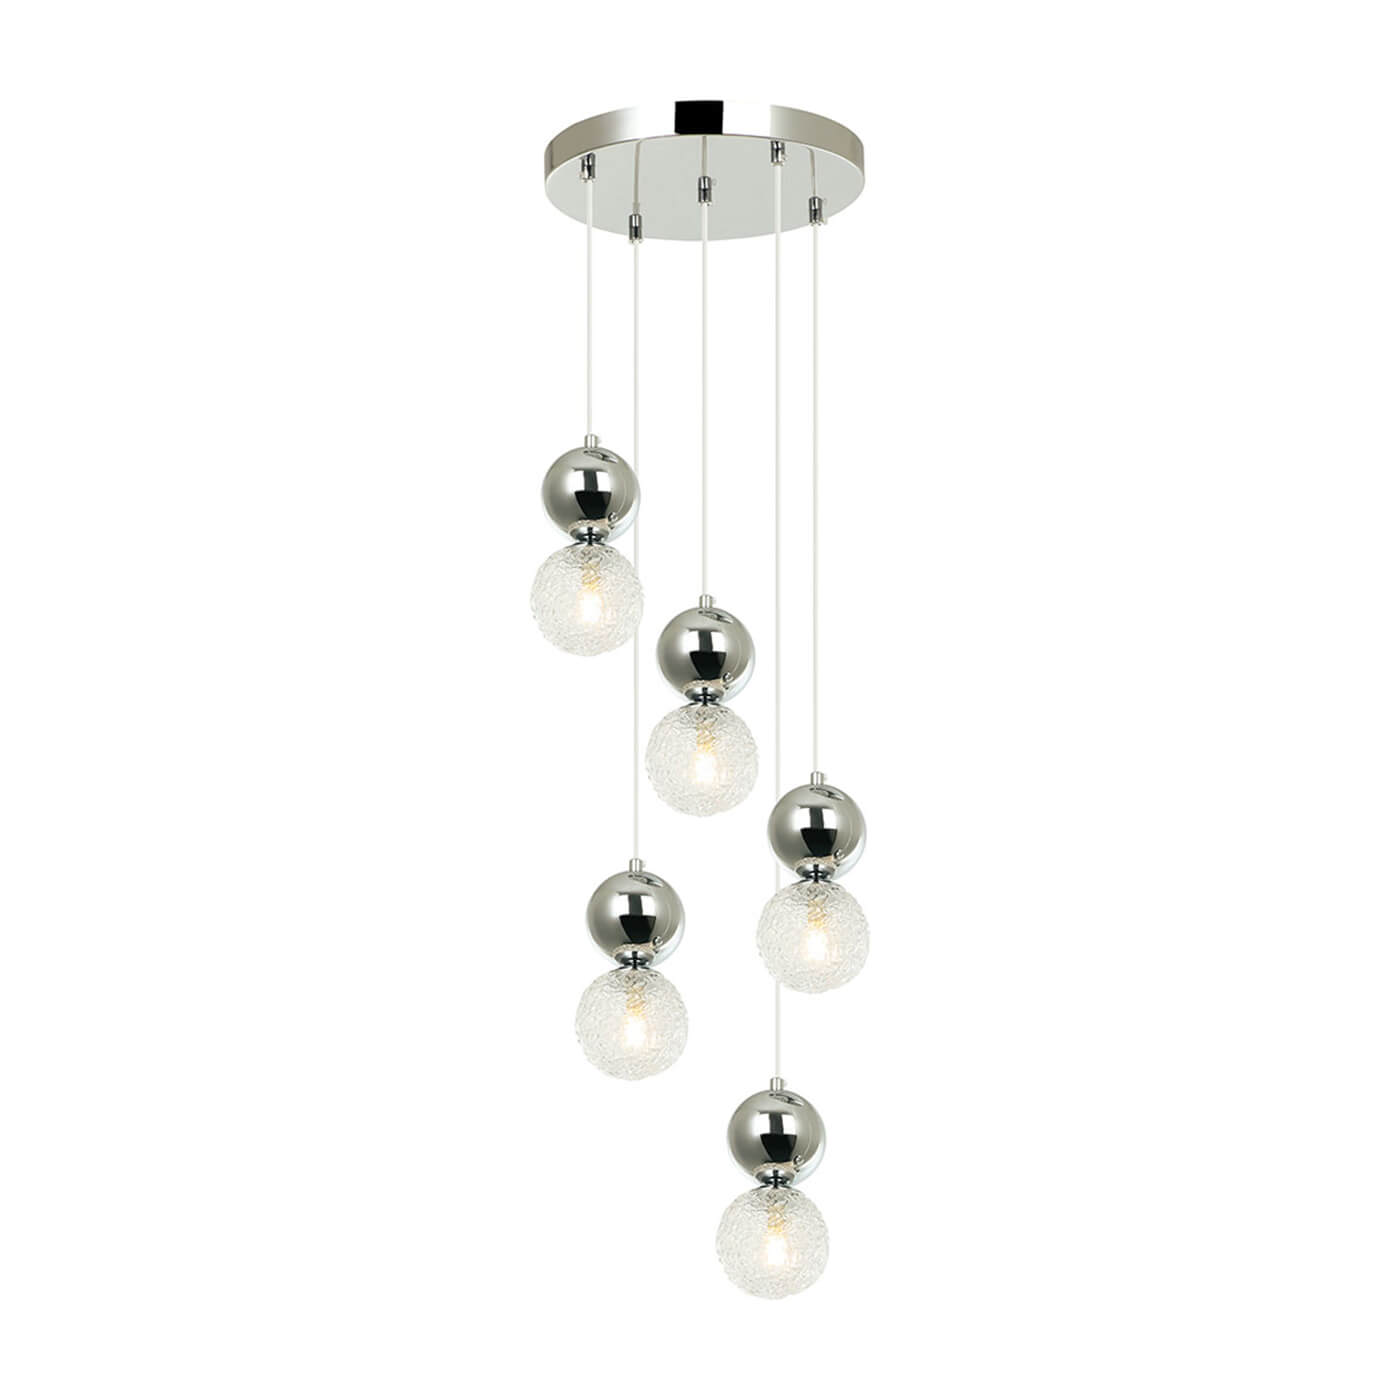 Cauti o lampa suspendata cromata SYLIA S5 cu glob de sticla, design modern, elegant, pentru living, dining sau dormitor din colectia de lustre si candelabre Domicilio?